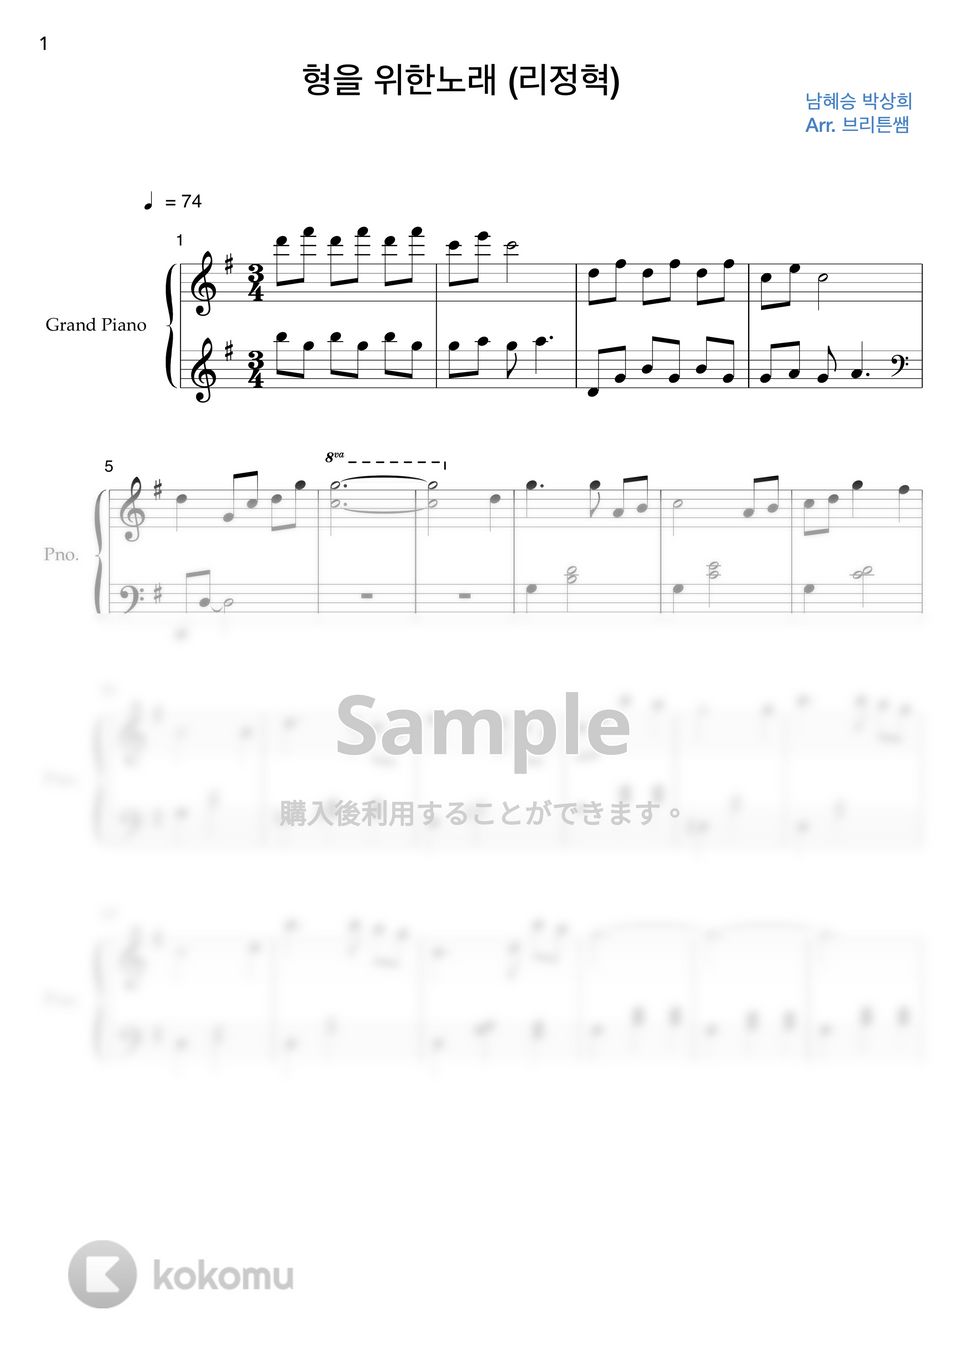 愛の不時着OST - 兄のための歌(feat. ジョンヒョク) (初級バージョン) by Brittenssem